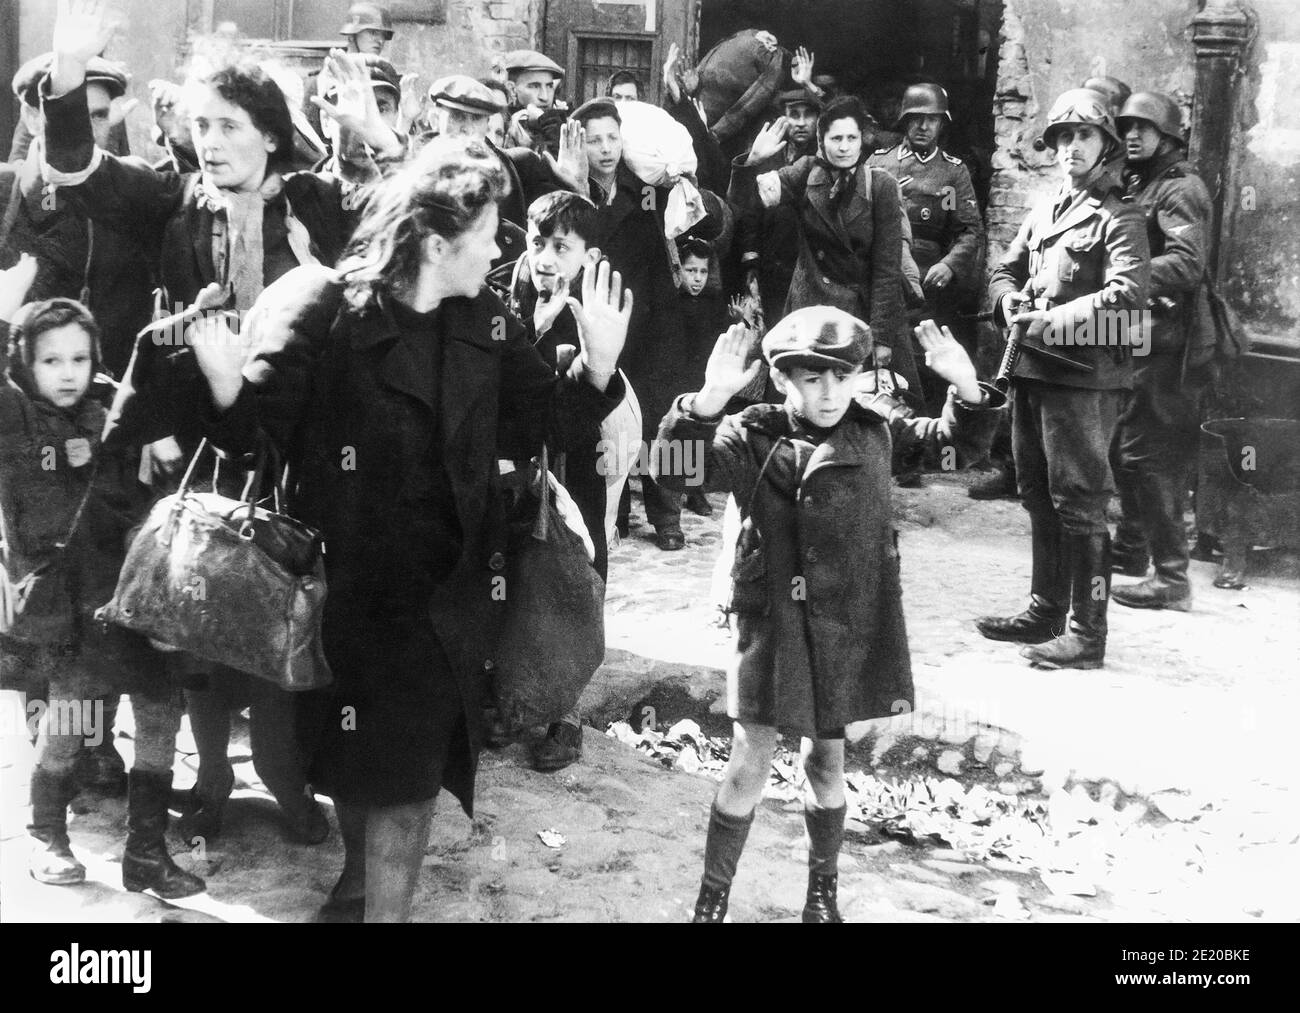 Un ragazzo alza le mani sulla testa mentre i soldati nazisti rimuovono forzatamente gli ebrei polacchi nel ghetto di Varsavia per essere trasportati in treno al campo di sterminio di Majdanek o Treblinka. Una delle fotografie più iconiche della seconda guerra mondiale, l'immagine, probabilmente da aprile o maggio 1943, è stata inclusa nel rapporto Stoop dato a Heinrich Himmler dalla SS e dal capo della polizia Jürgen Stroop. Foto Stock